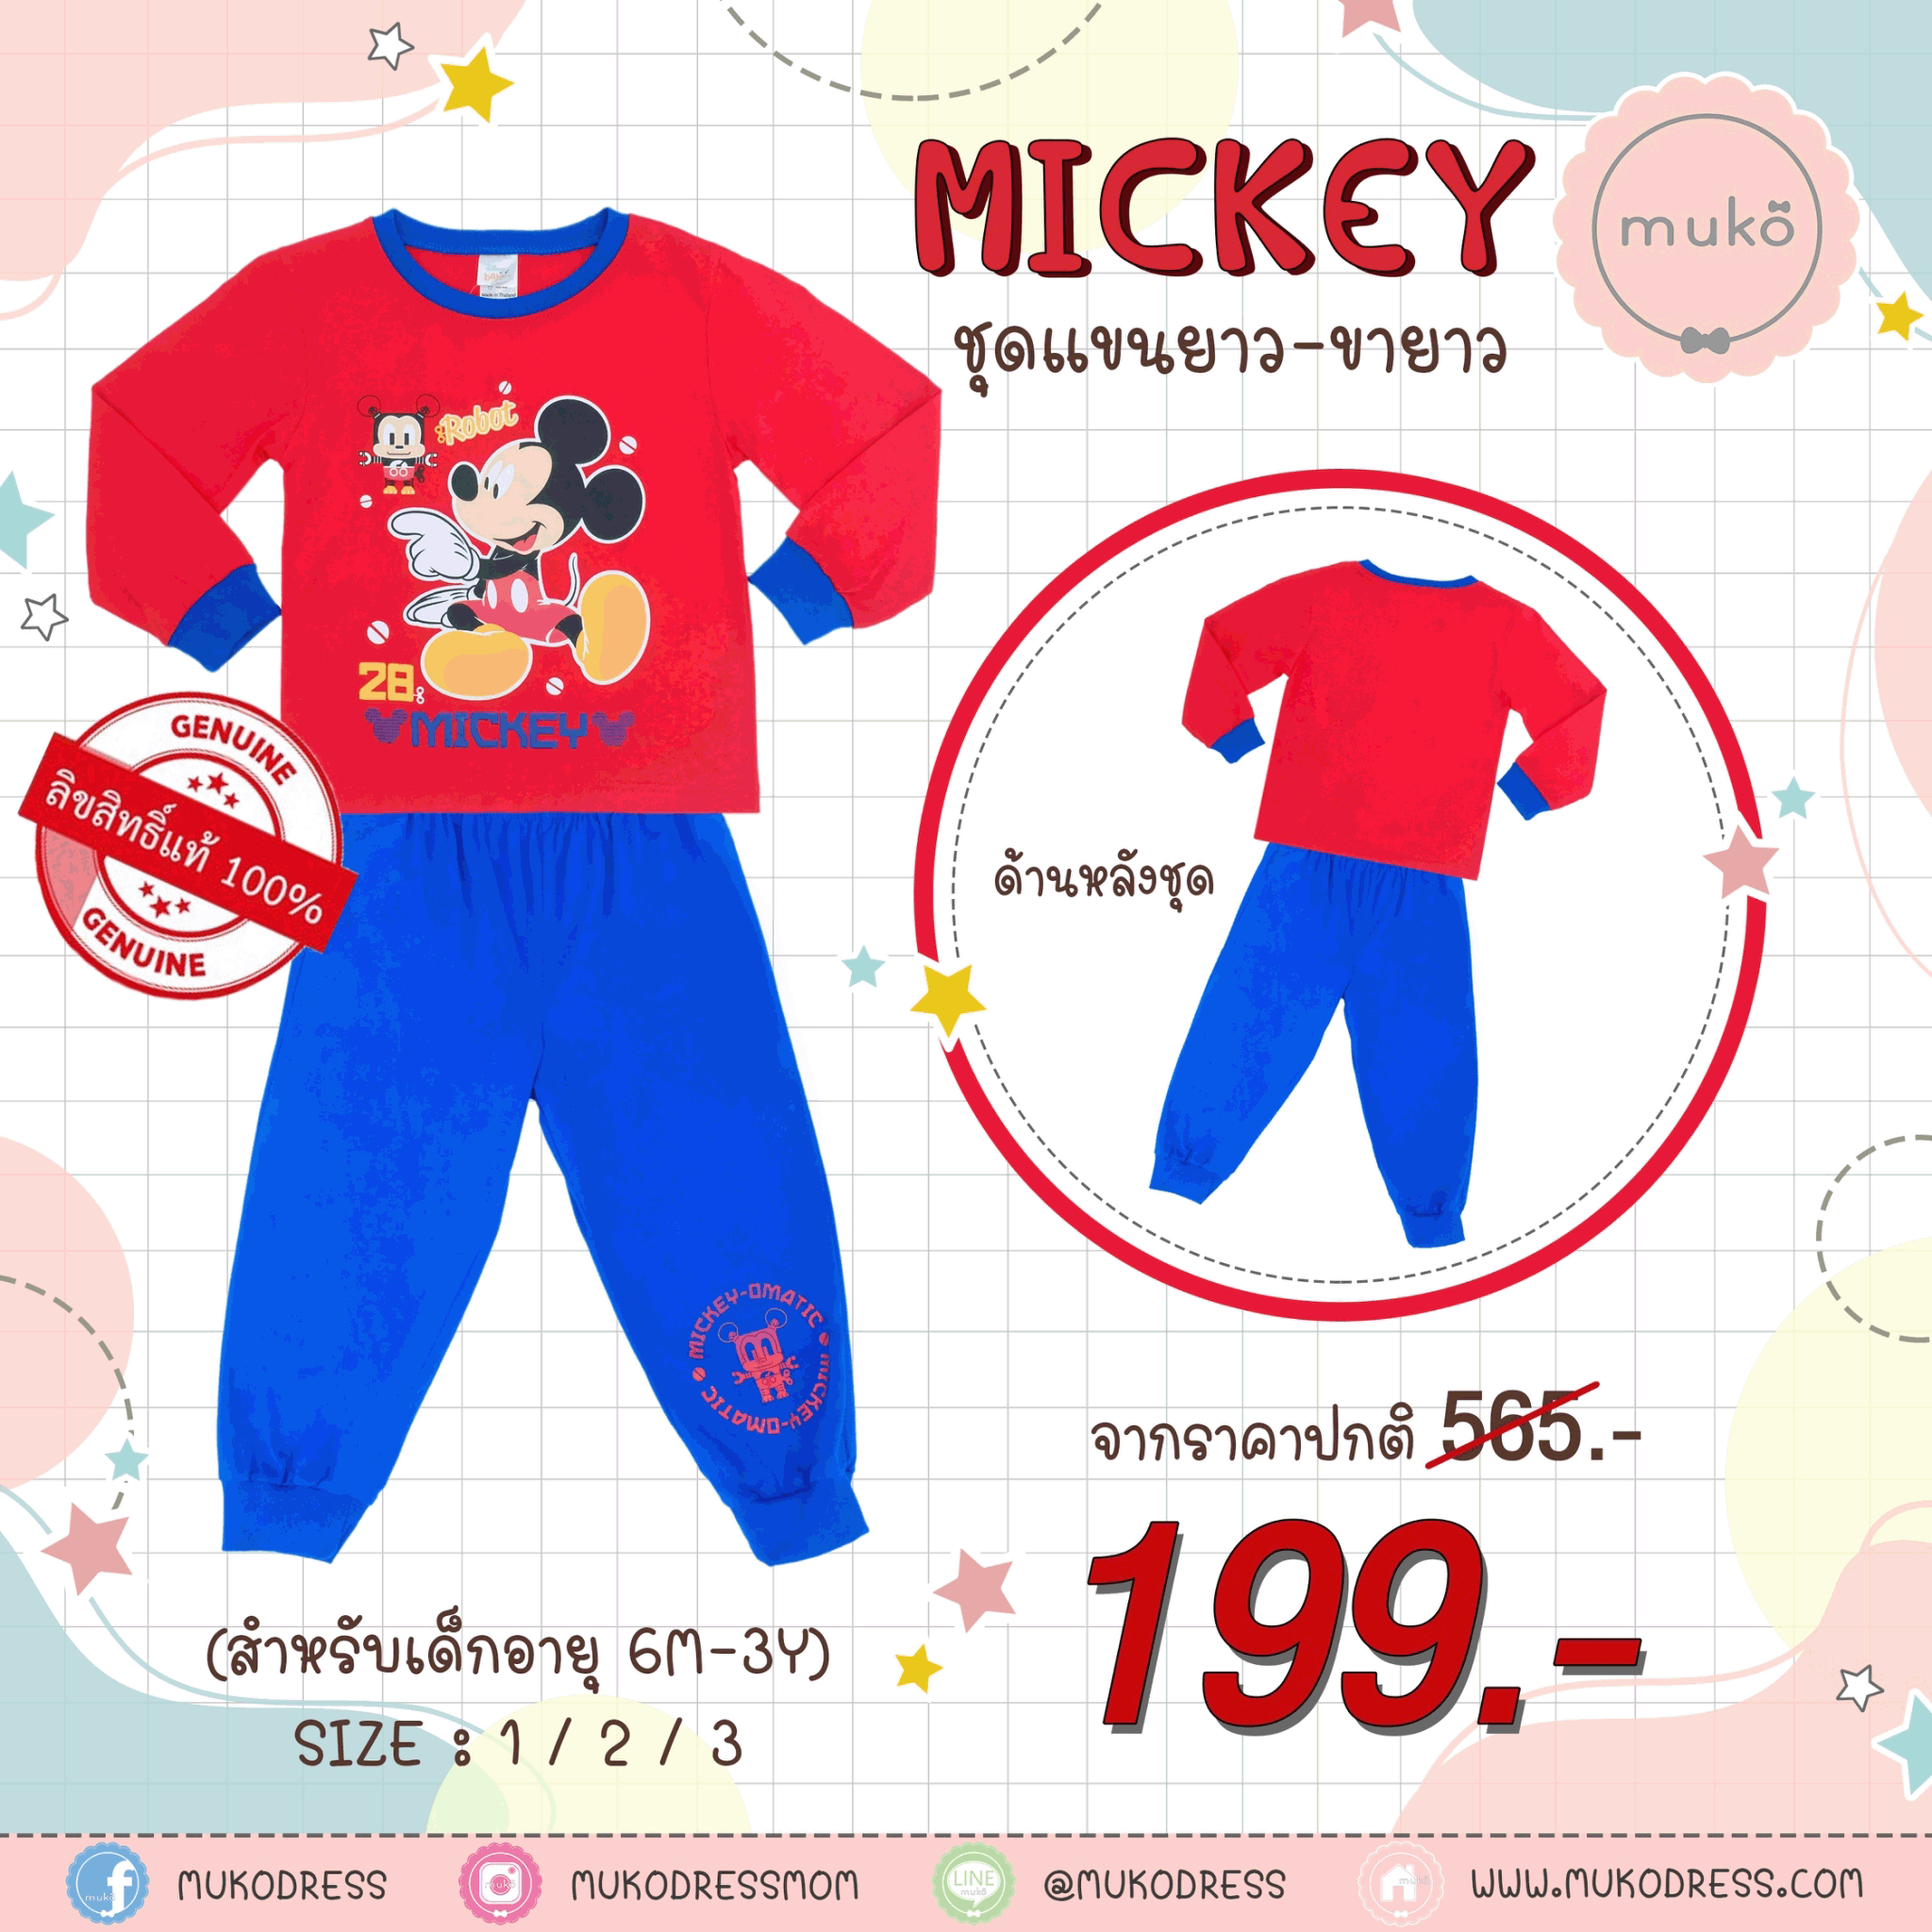 ชุดเด็ก 2-3 ขวบ แขนยาว-ขายาว (Size 3) DMK127-02-3-Red 3 ลาย มิกกี้ เมาส์ Mickey Mouse สีแดง